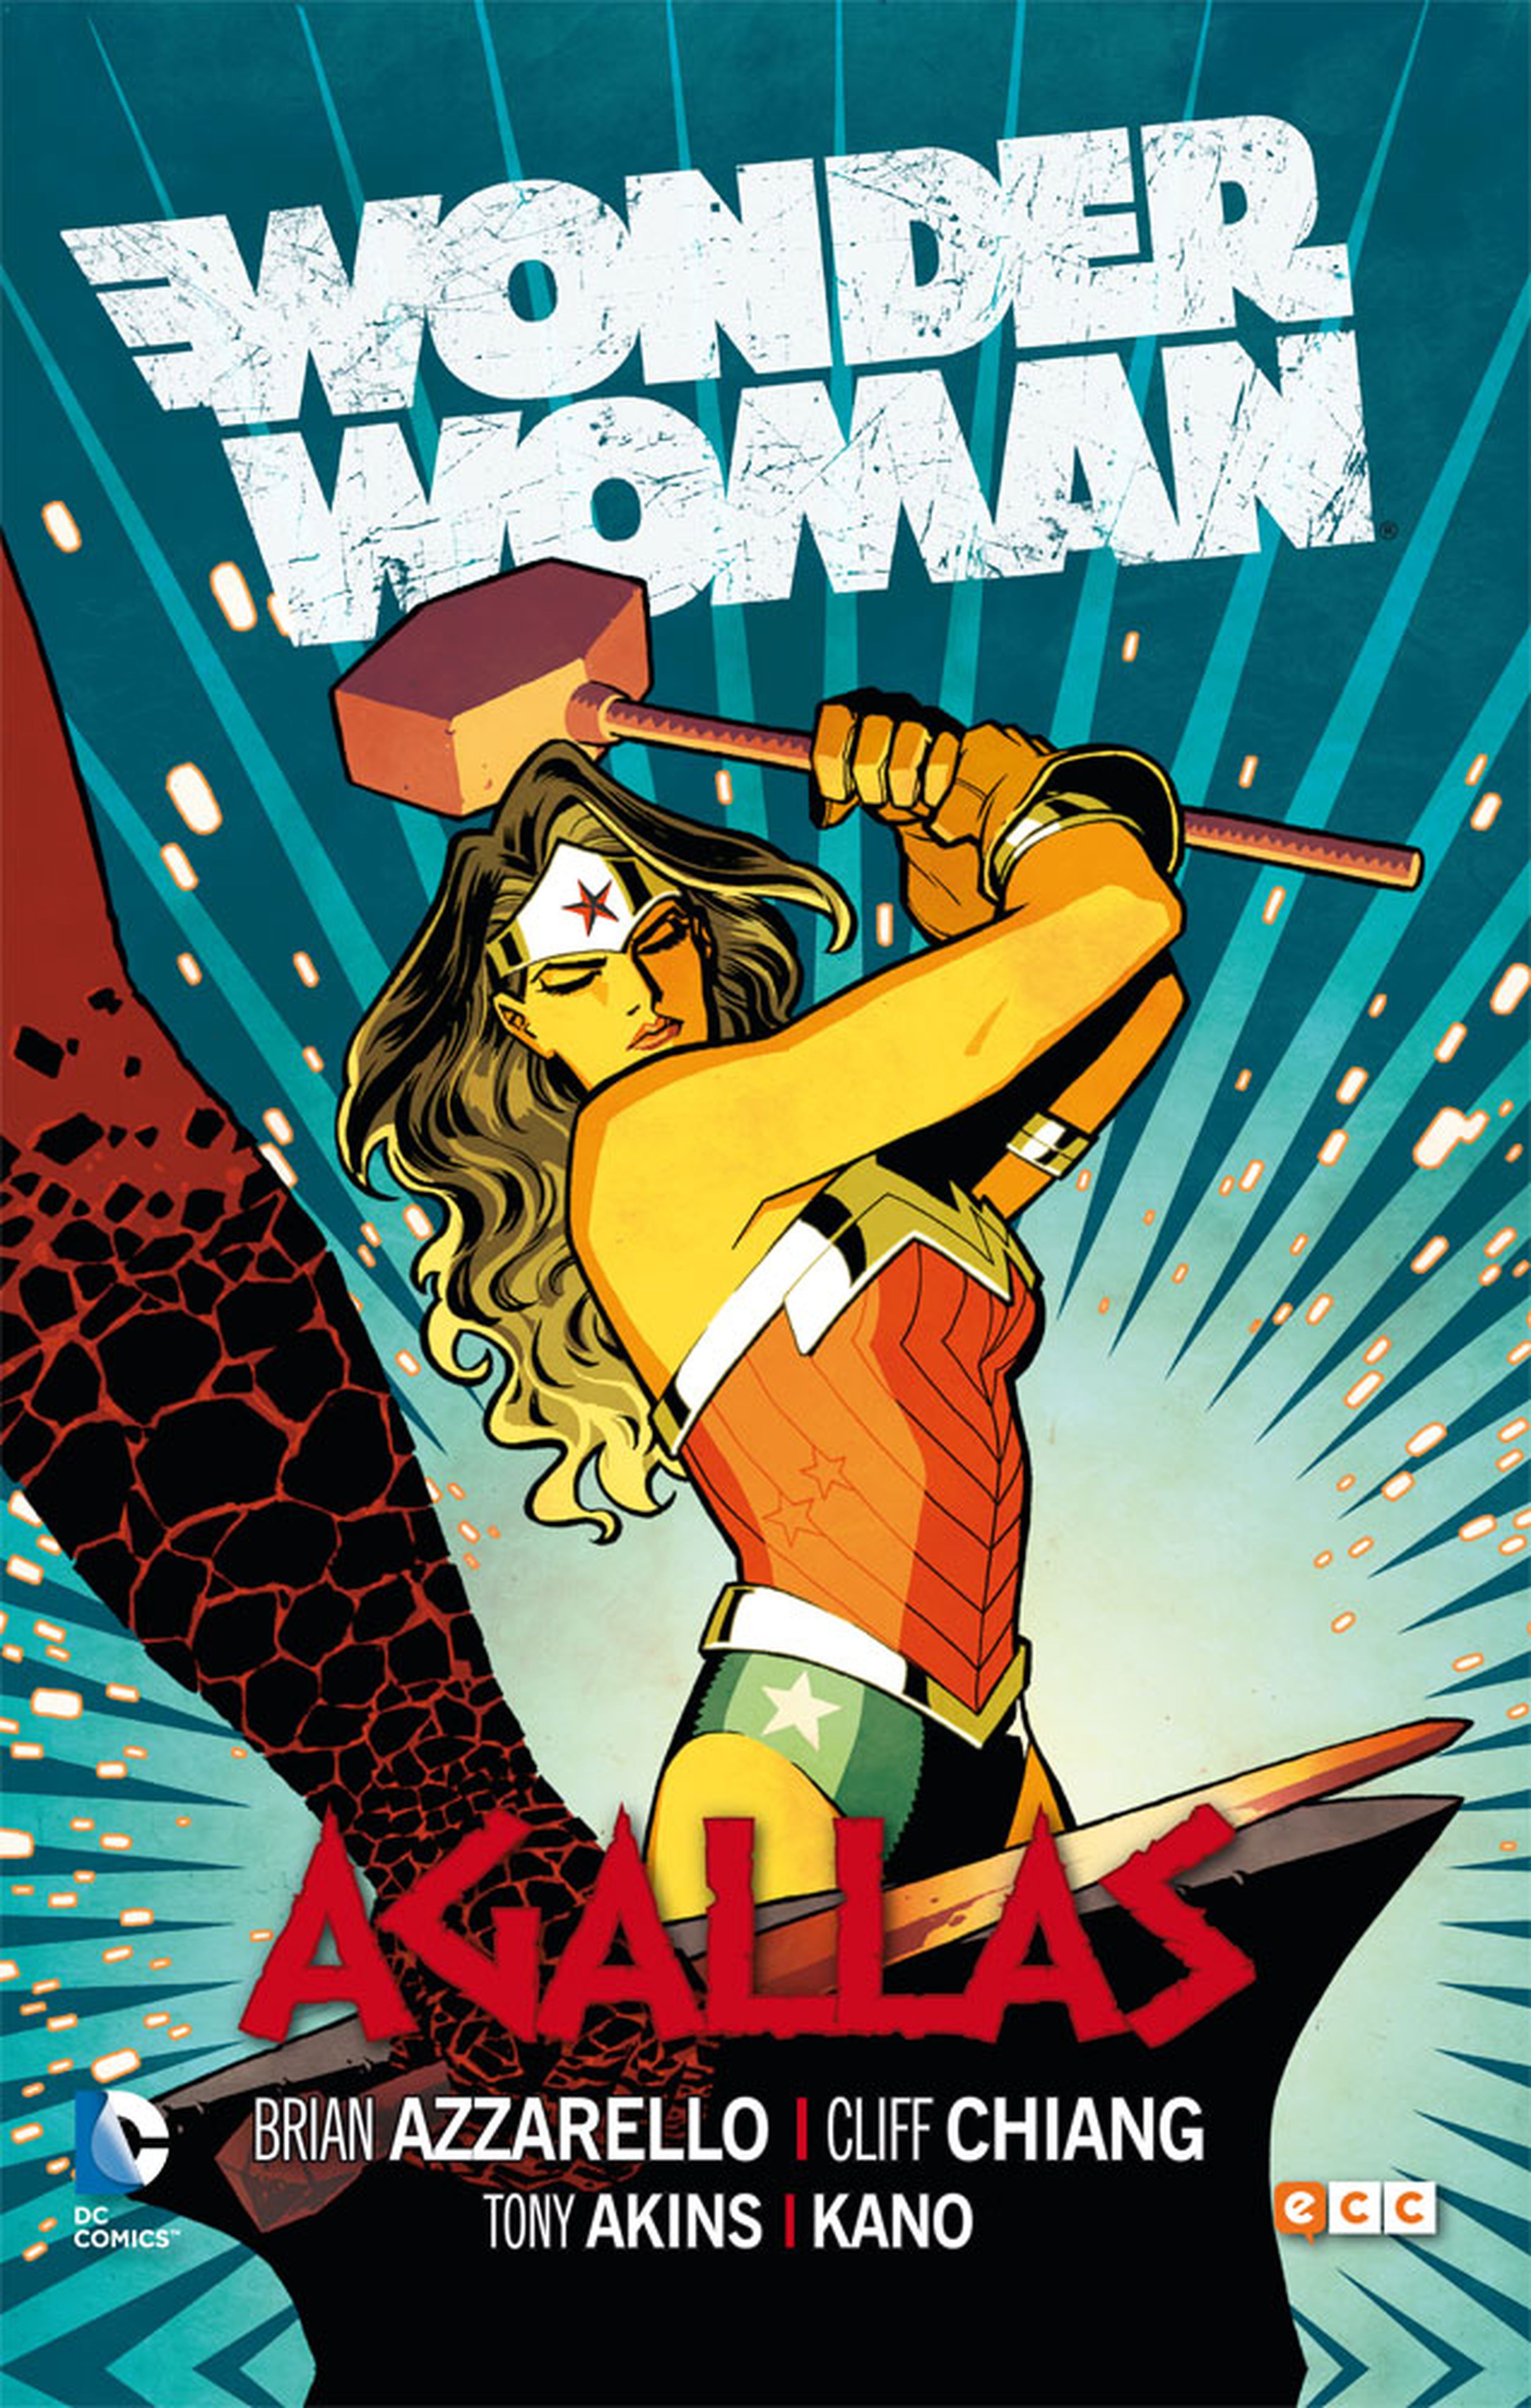 Portada de Wonder Woman: Agallas, el tomo 2 de la colección